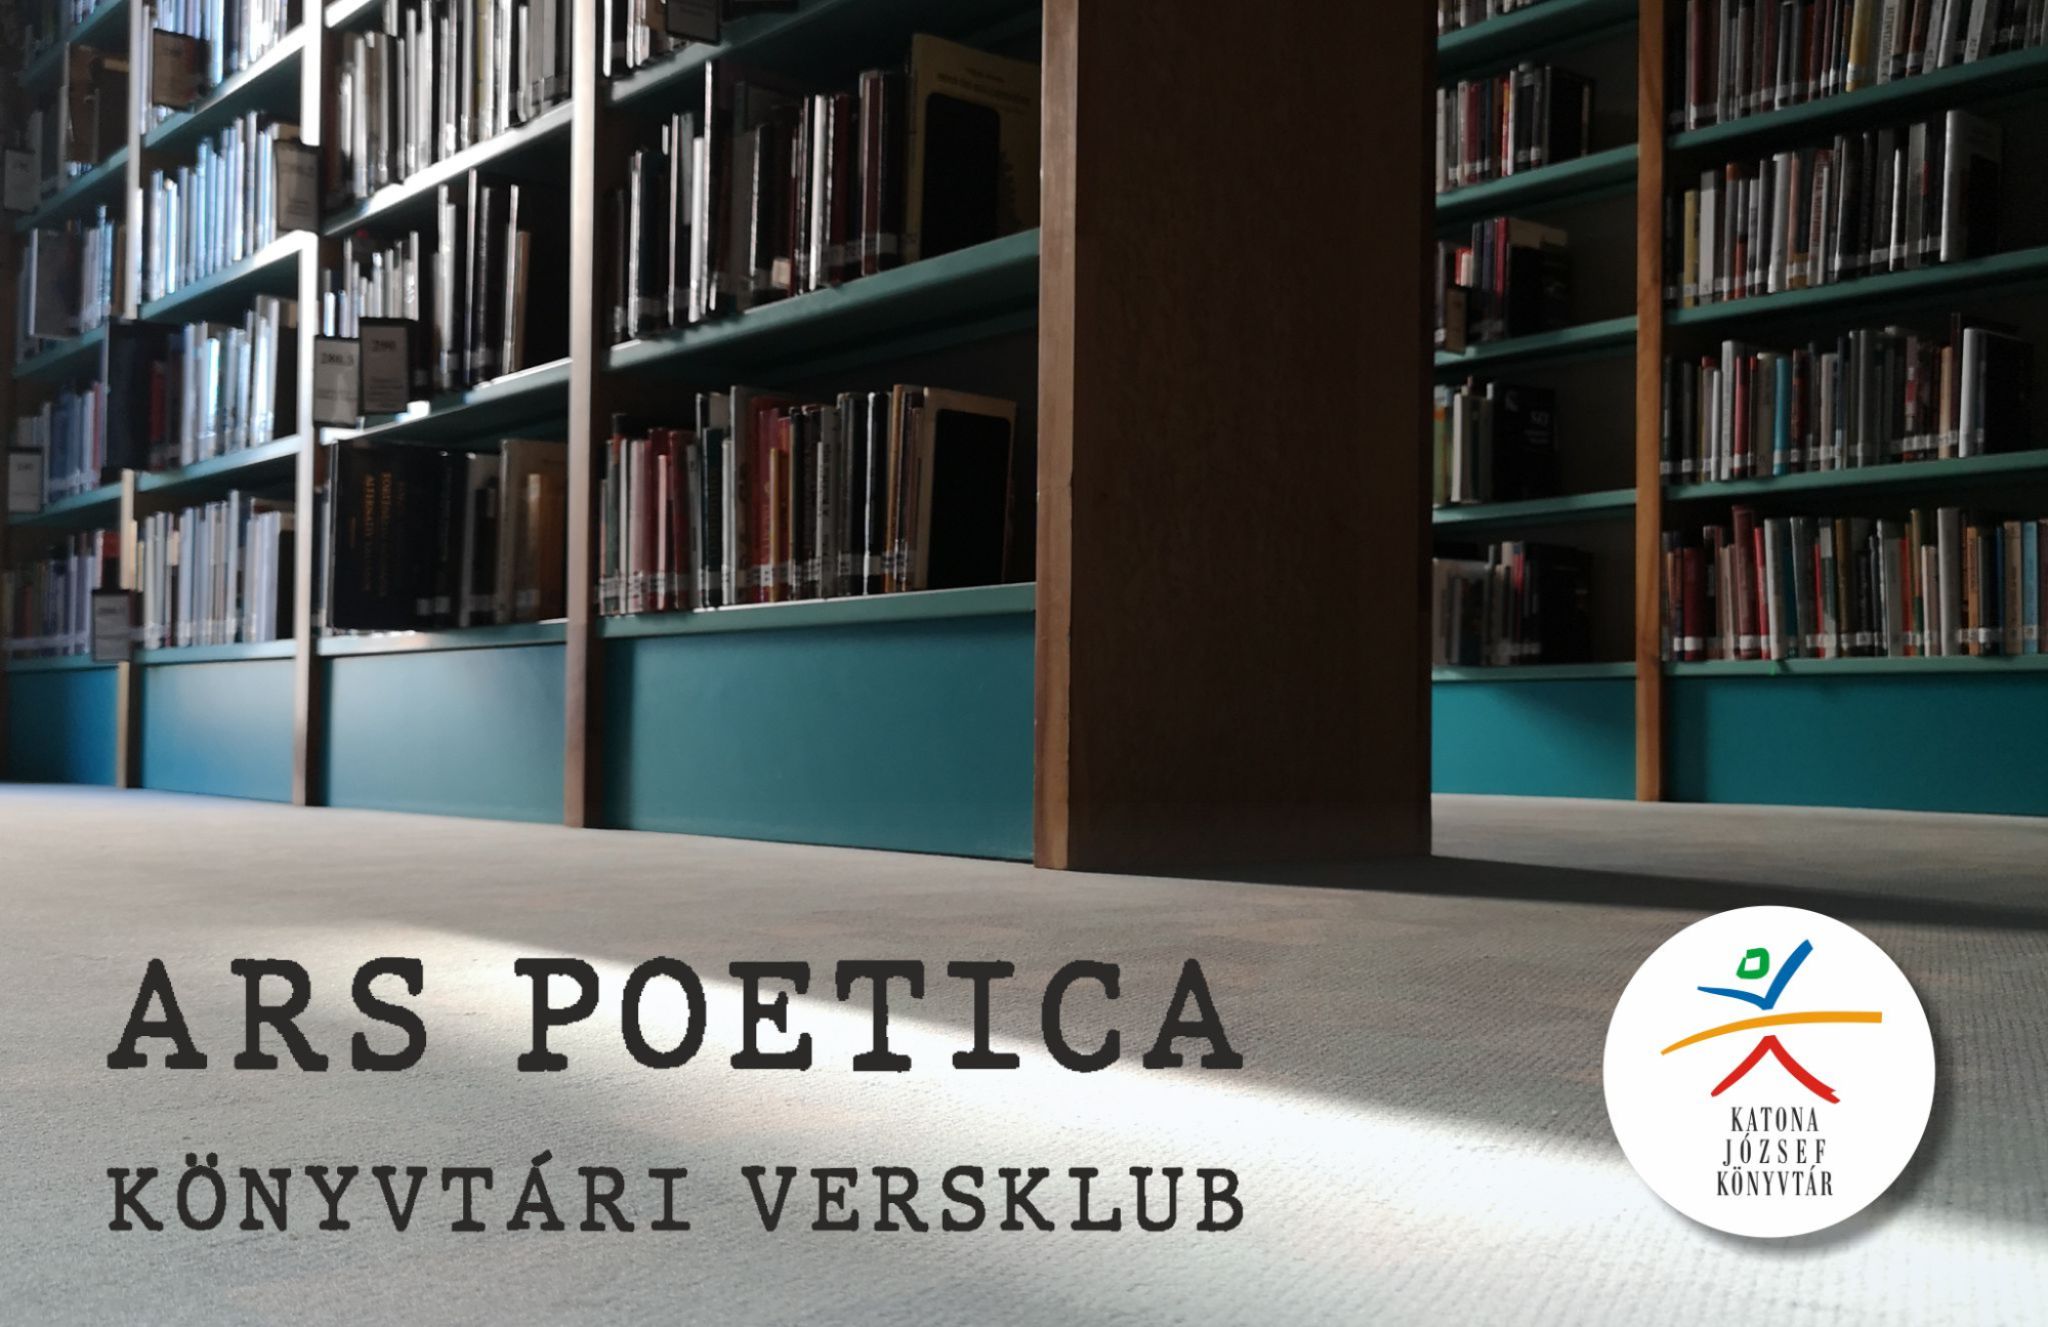  Ars poetica - Könyvtári versklub